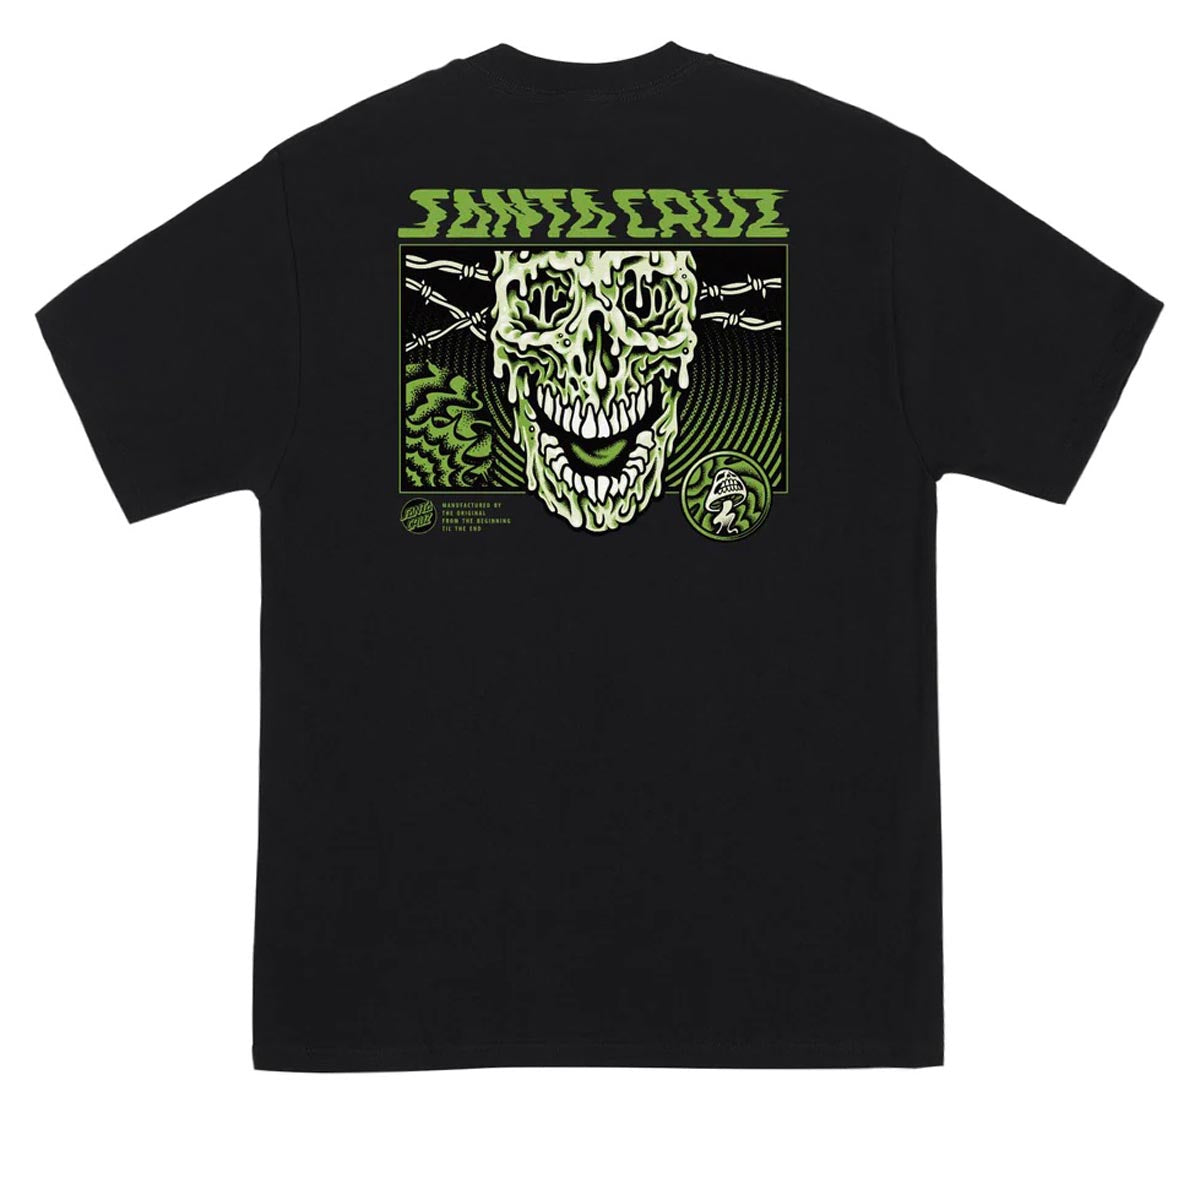 Santa Cruz Toxic Skull T-Shirt - Black image 1